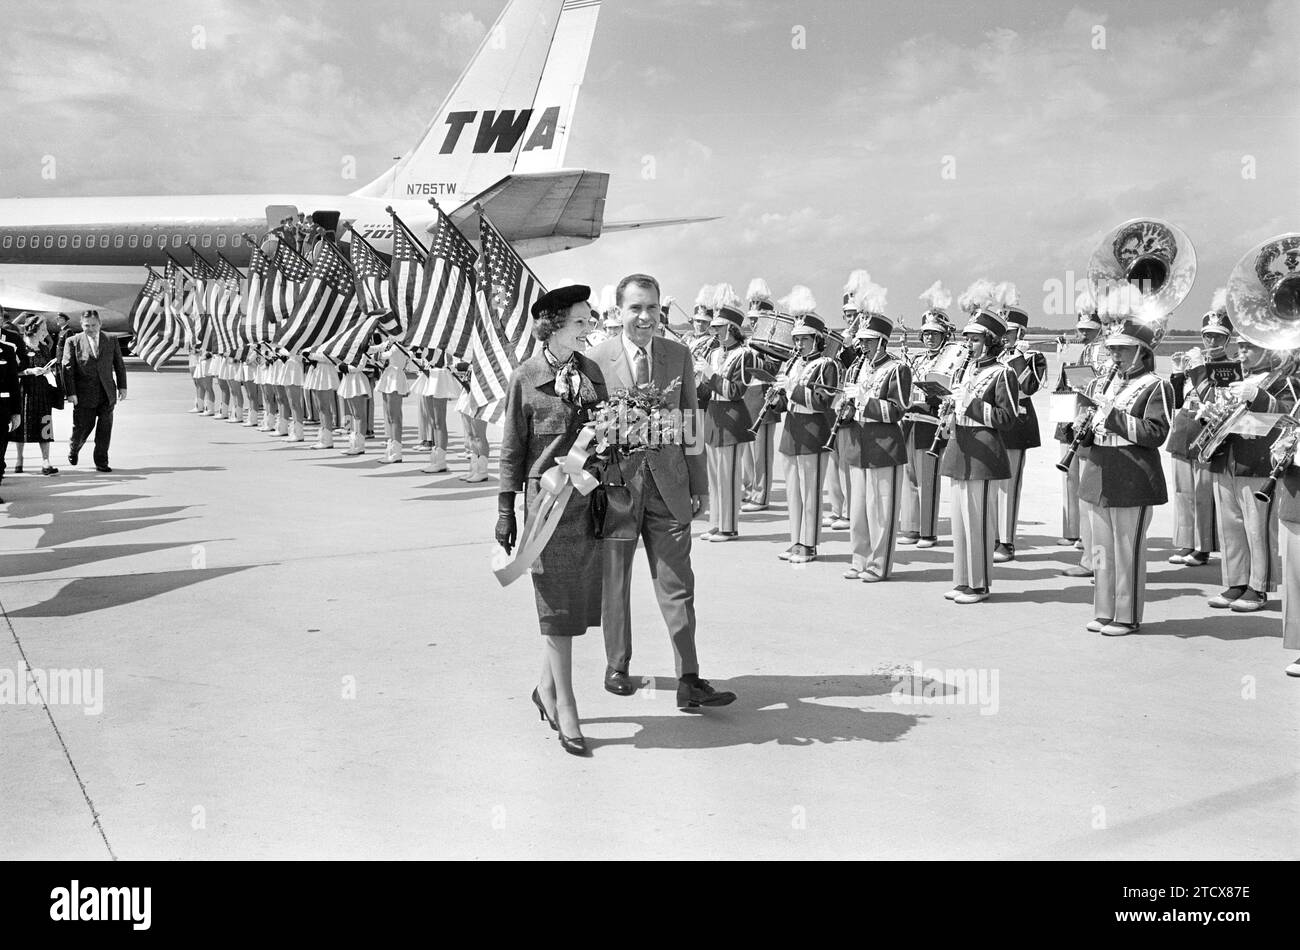 Le vice-président américain Richard M. Nixon avec son épouse Pat Nixon marchent par bande et drapeaux américains à l'aéroport pendant le voyage de campagne, Indianapolis, Indiana, USA, Thomas J. O'Halloran, U.S. News & World Report Magazine Photography Collection, 14 septembre 1960 Banque D'Images